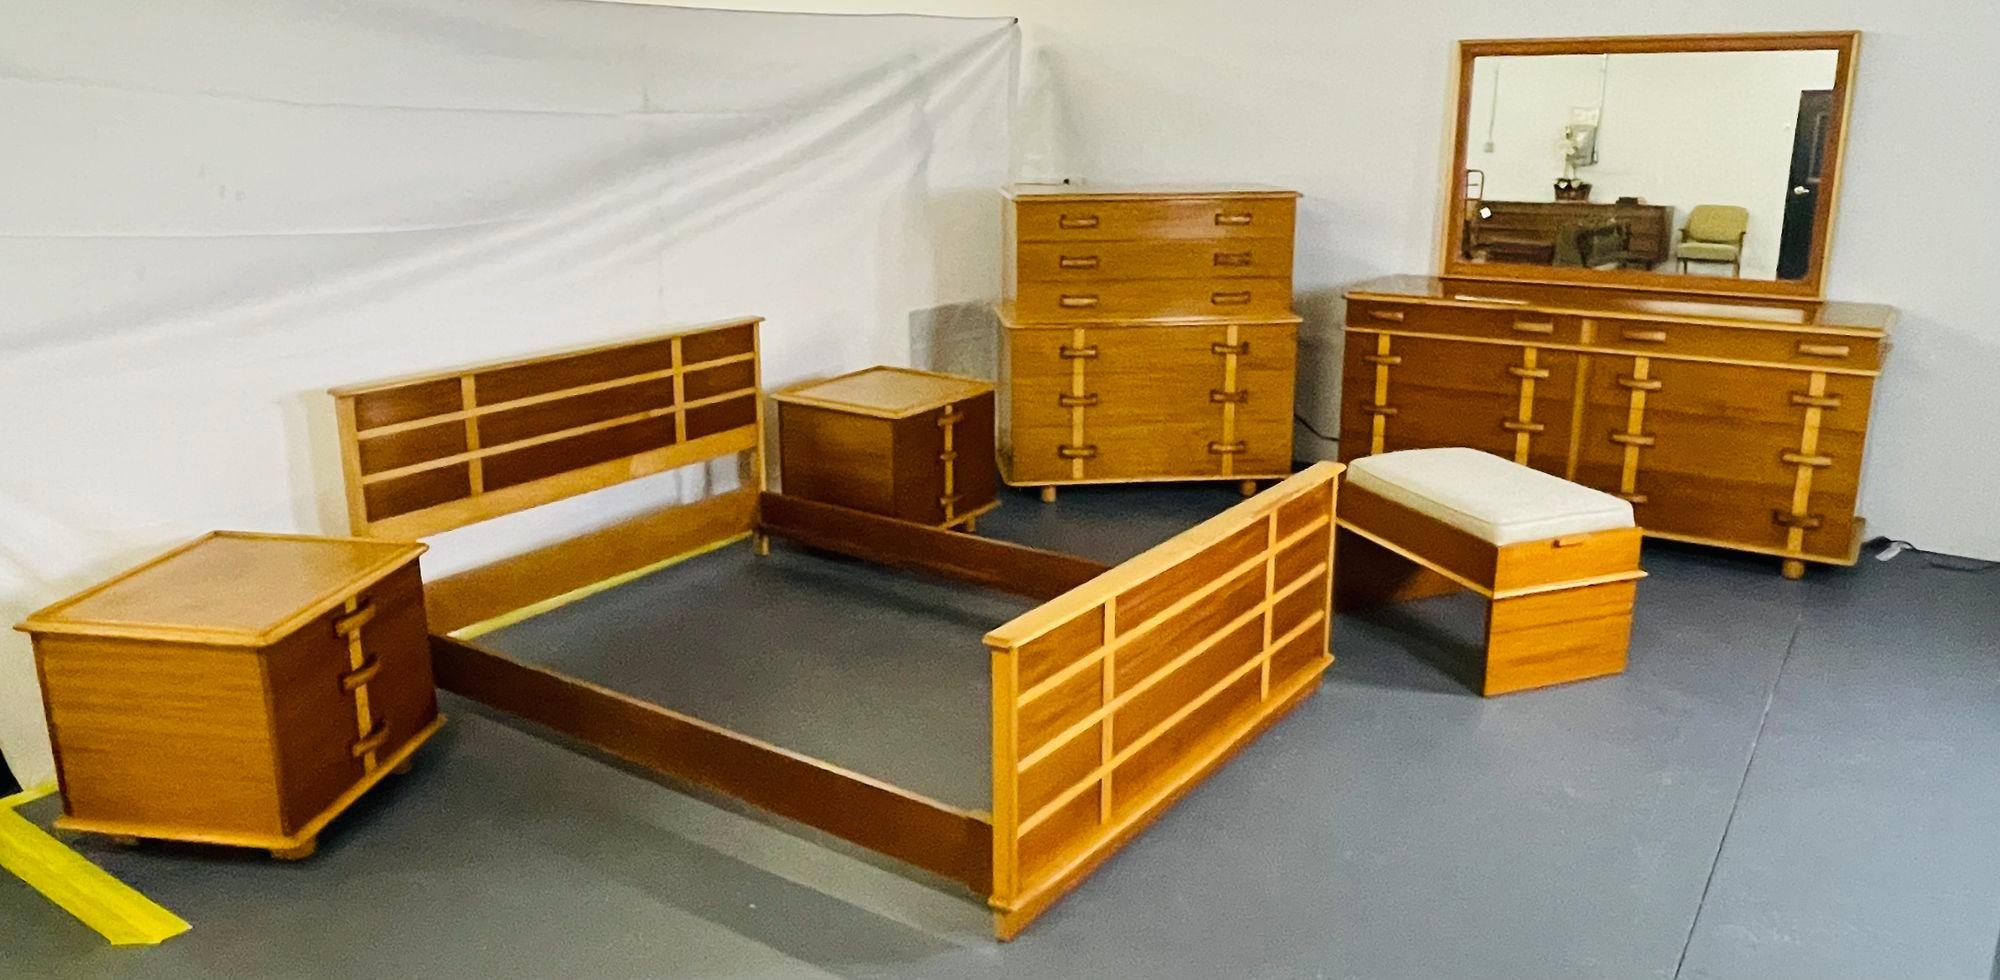 1950s bedroom furniture value